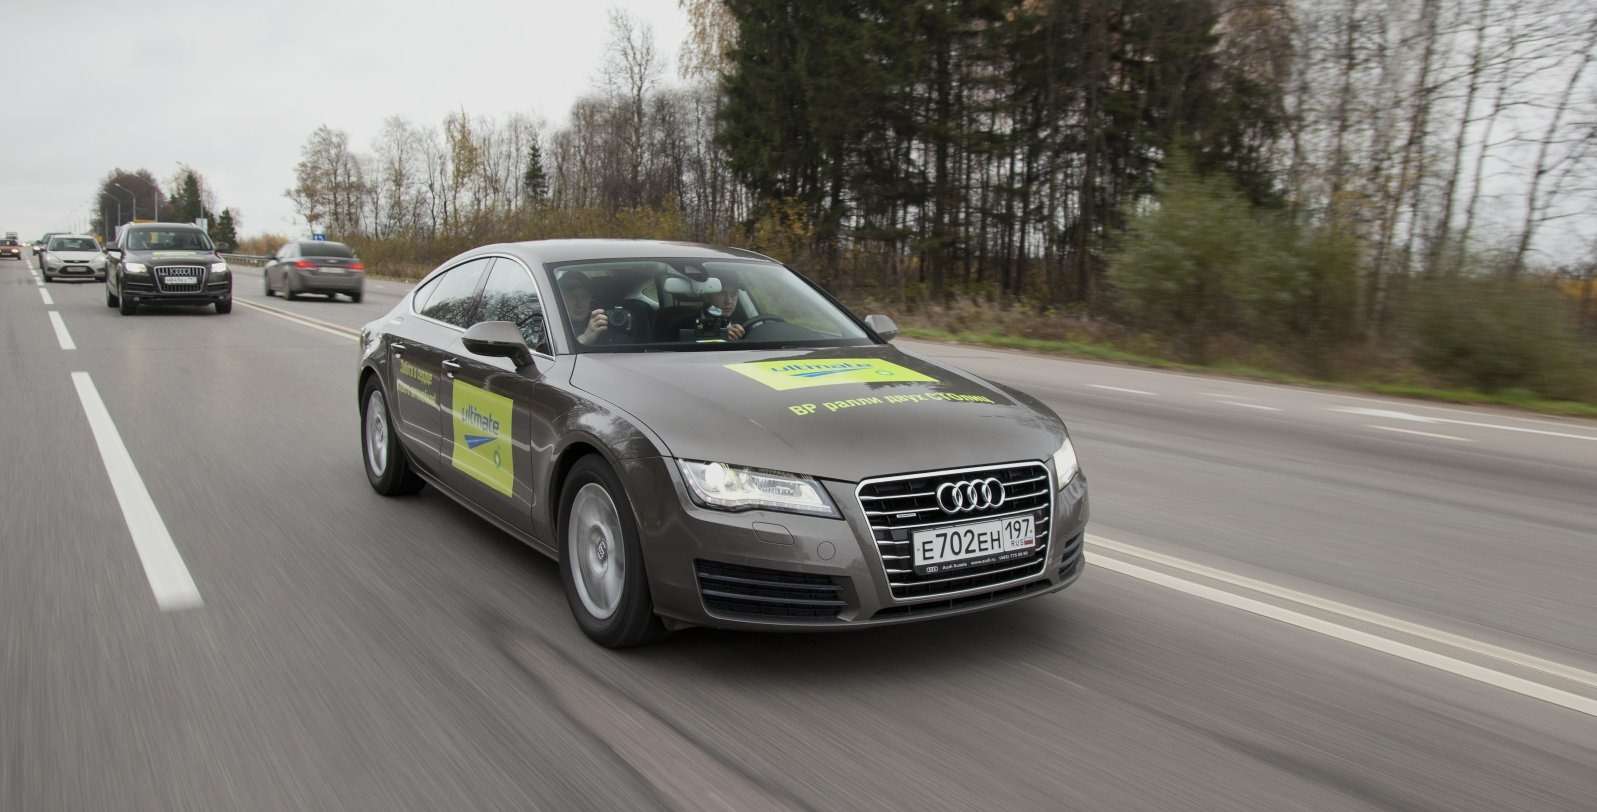 Автомобили прекрасные, скорости в них не чувствуешь, и  для контроля режима движения, особенно в населенных пунктах, приходится частенько посматривать на спидометр. И расходометр. На 110-120 км/ч при притопленной педали он показывает 5 и меньше л/100 км. Потому что в Audi А7 и коробка 7-ступенчатая.